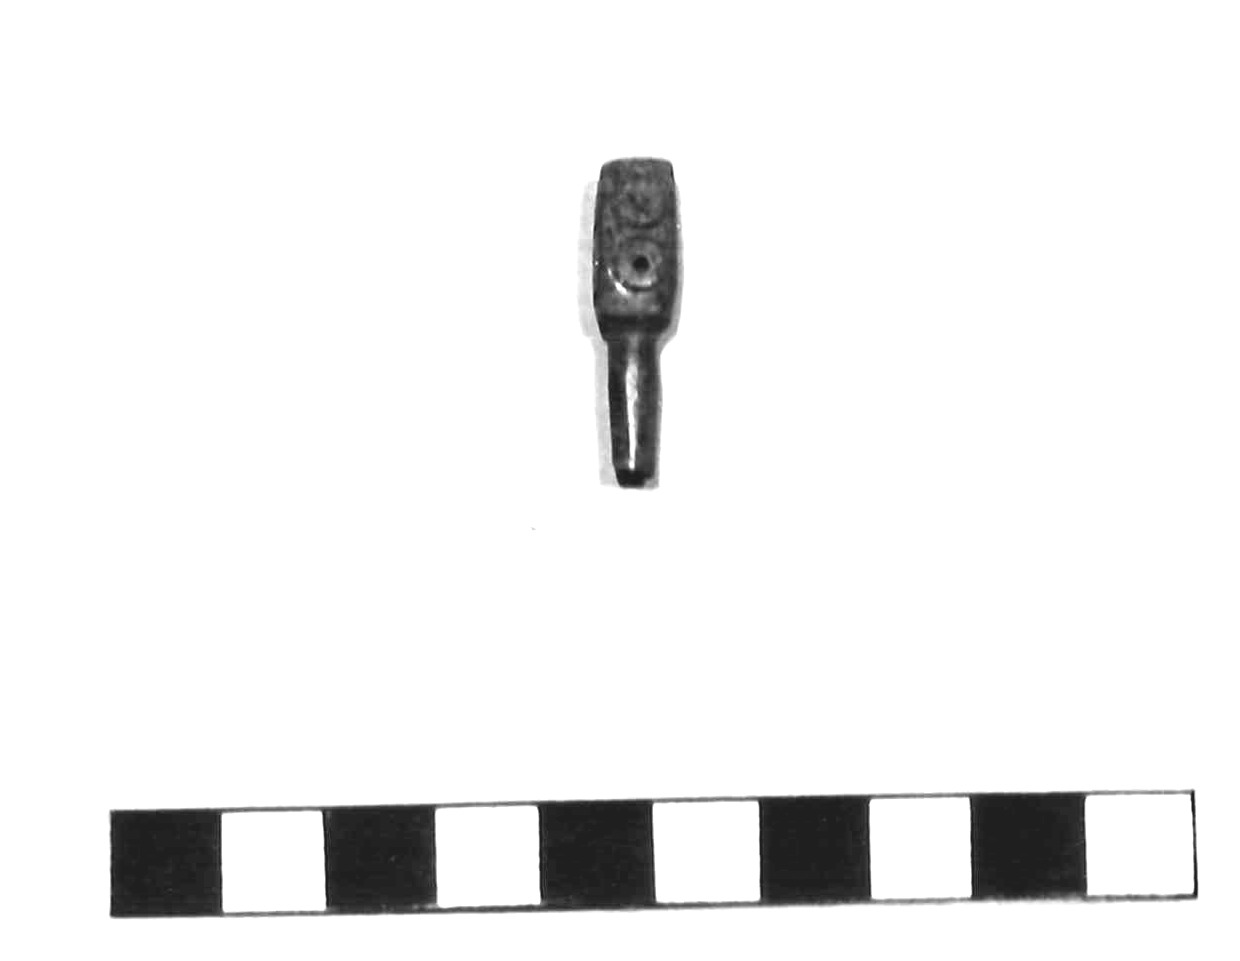 spillone con capocchia parallelepipeda - subappenninico (età del bronzo recente)